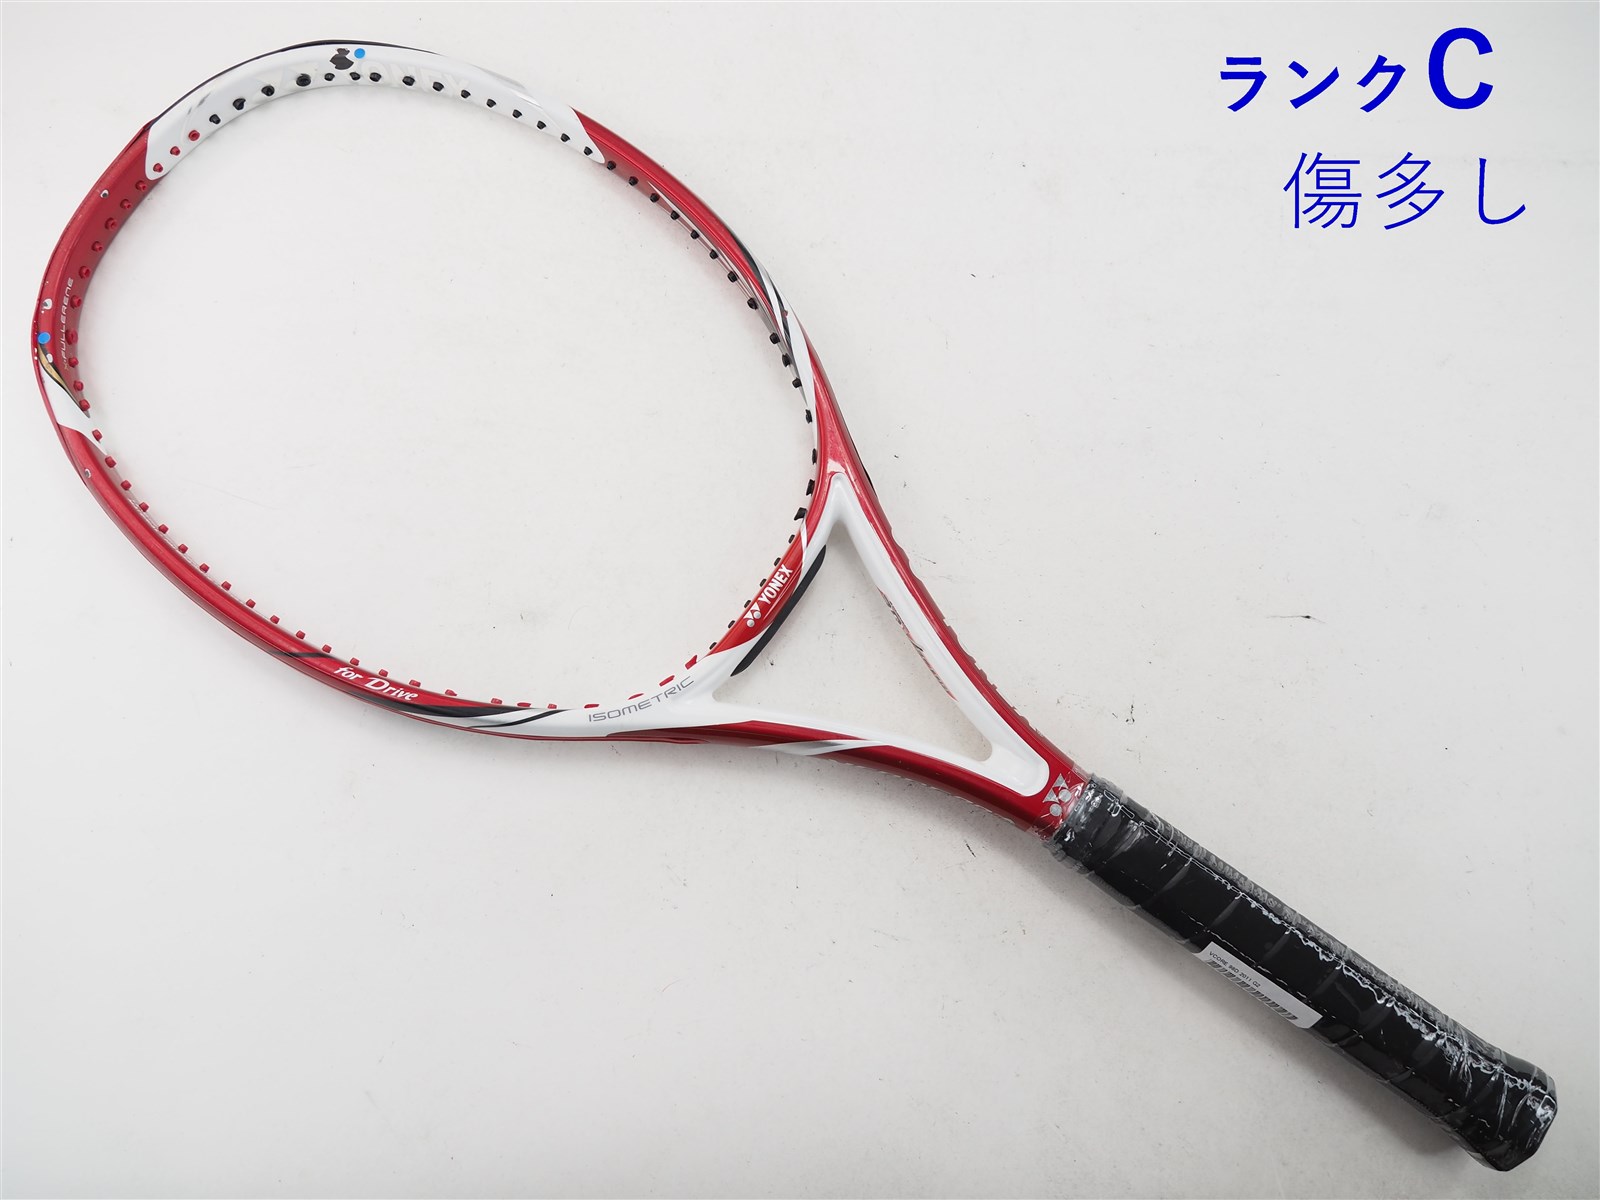 テニスラケット ヨネックス ブイコア 98D 2011年モデル【DEMO】 (G2